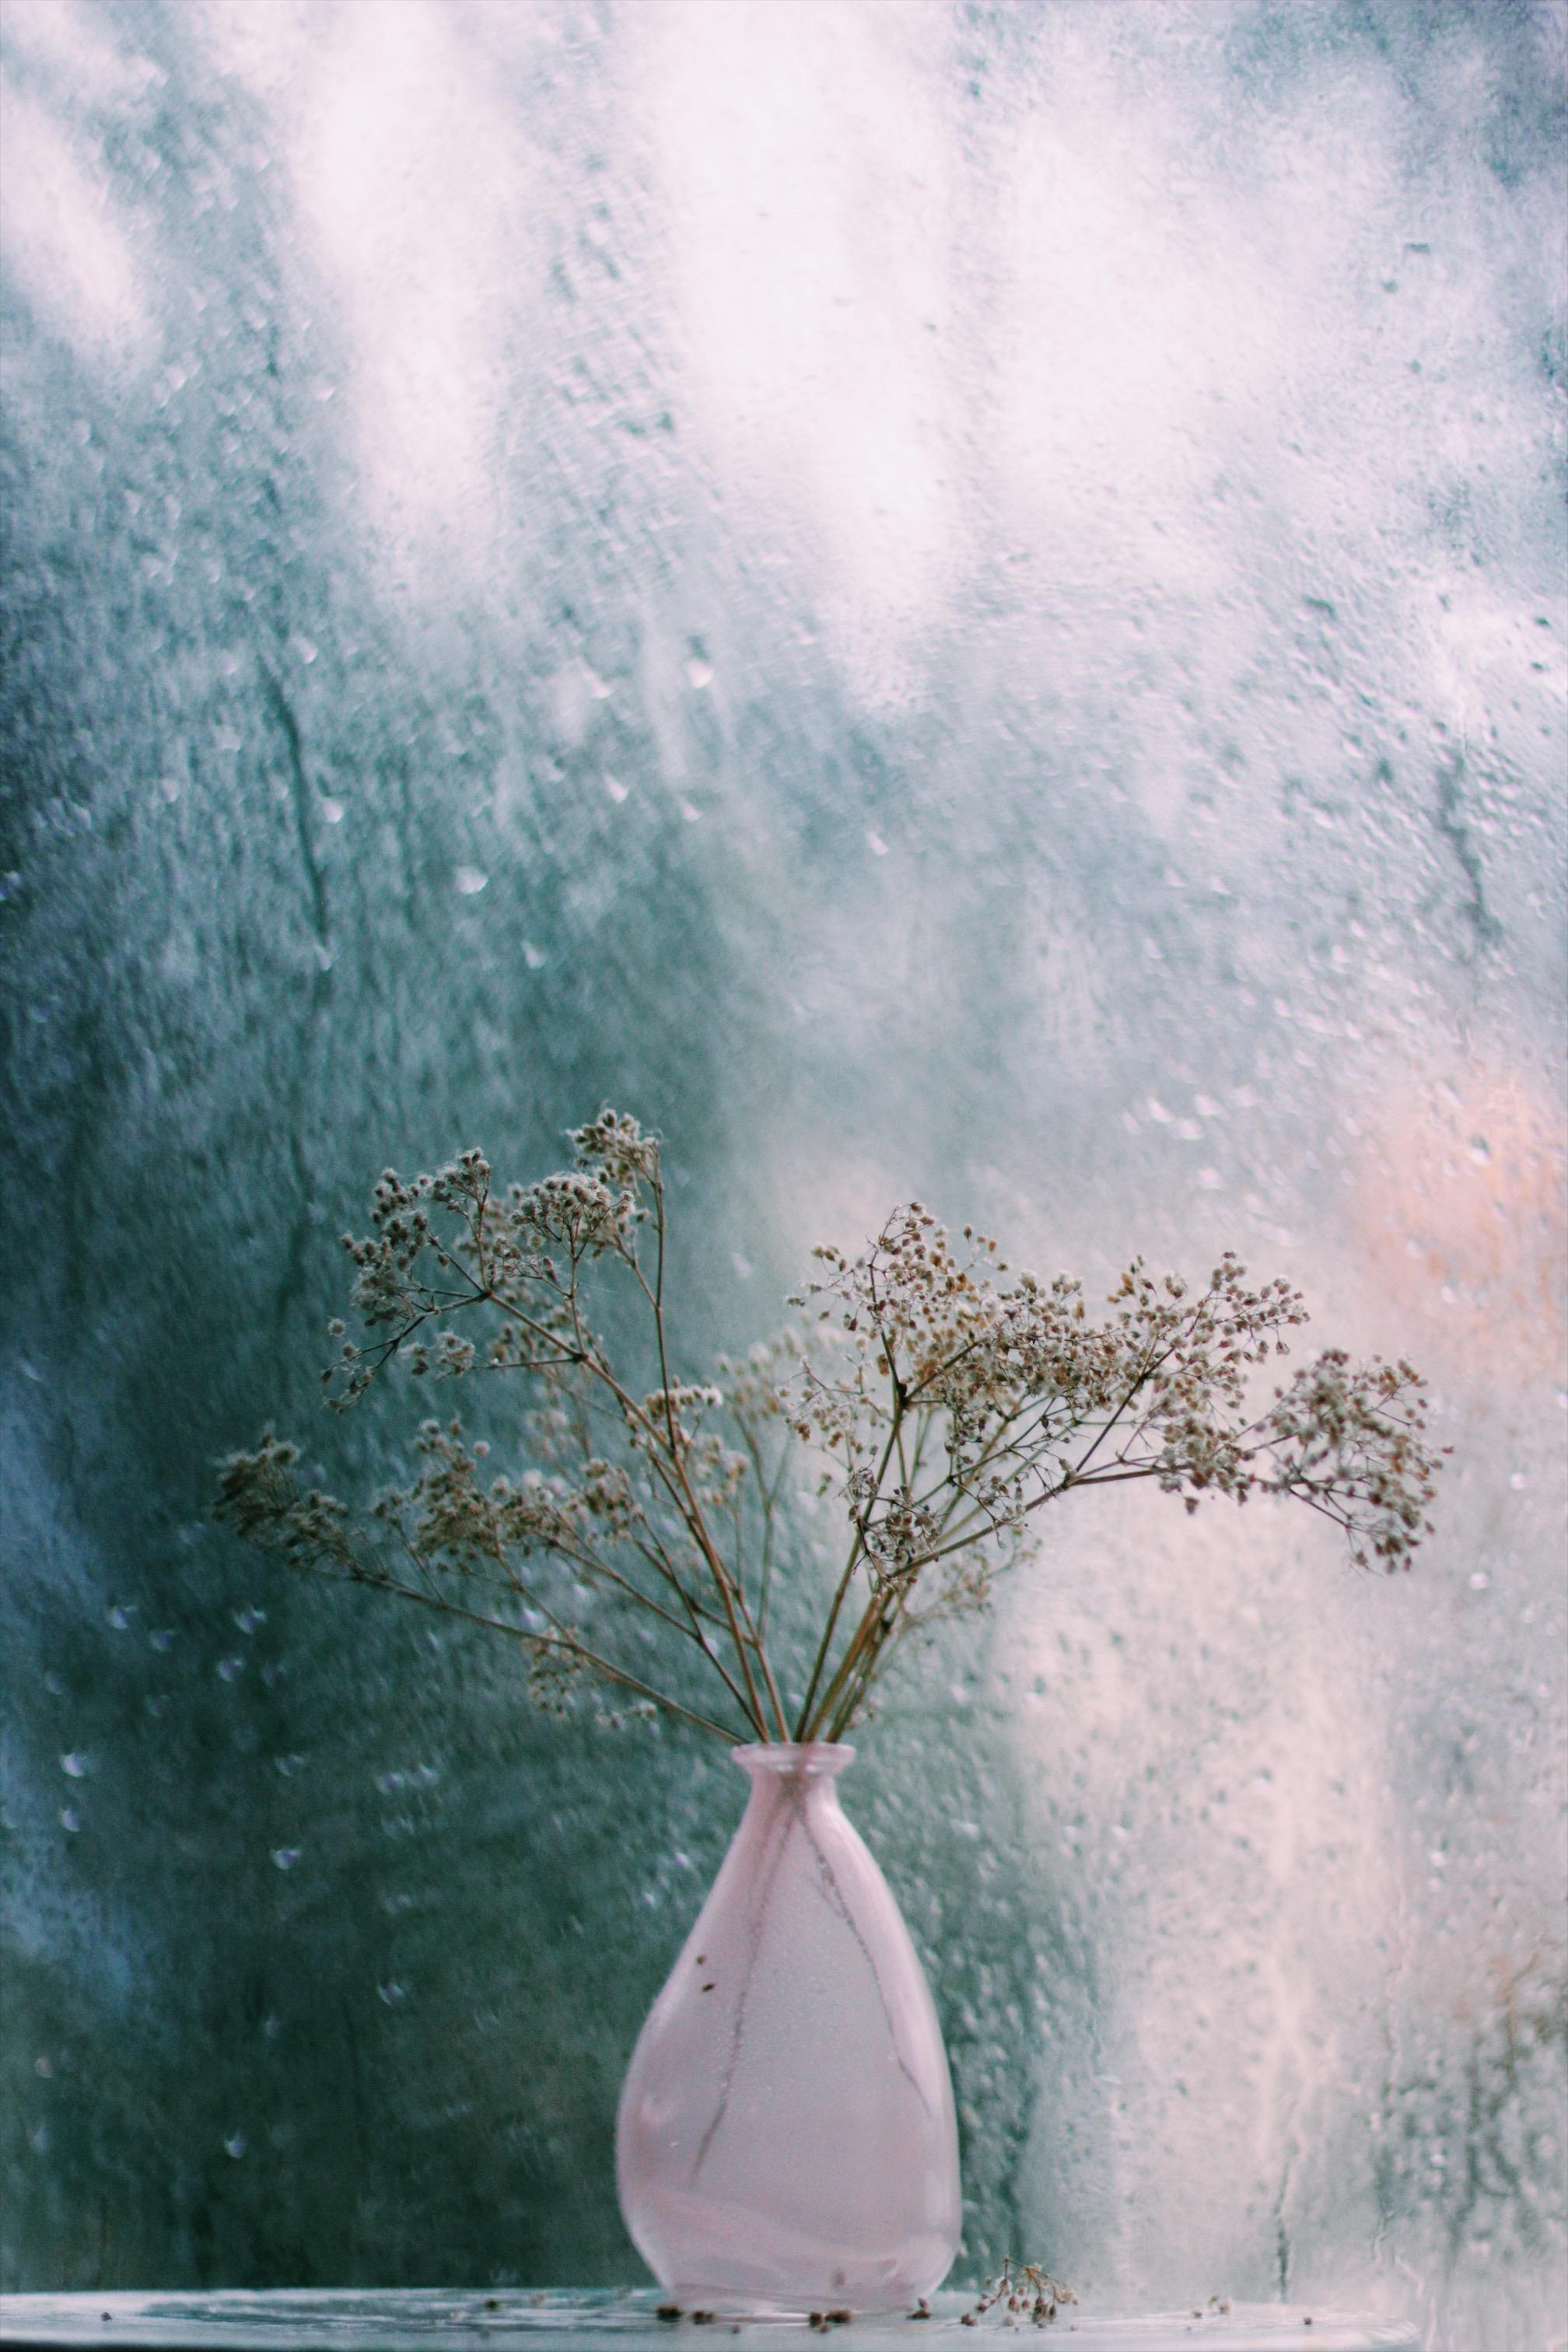 Warum ich den Regen liebe 💙🌦☔️
•
•
#couchliebt#deko#regen#vasen#home#blumen#licht